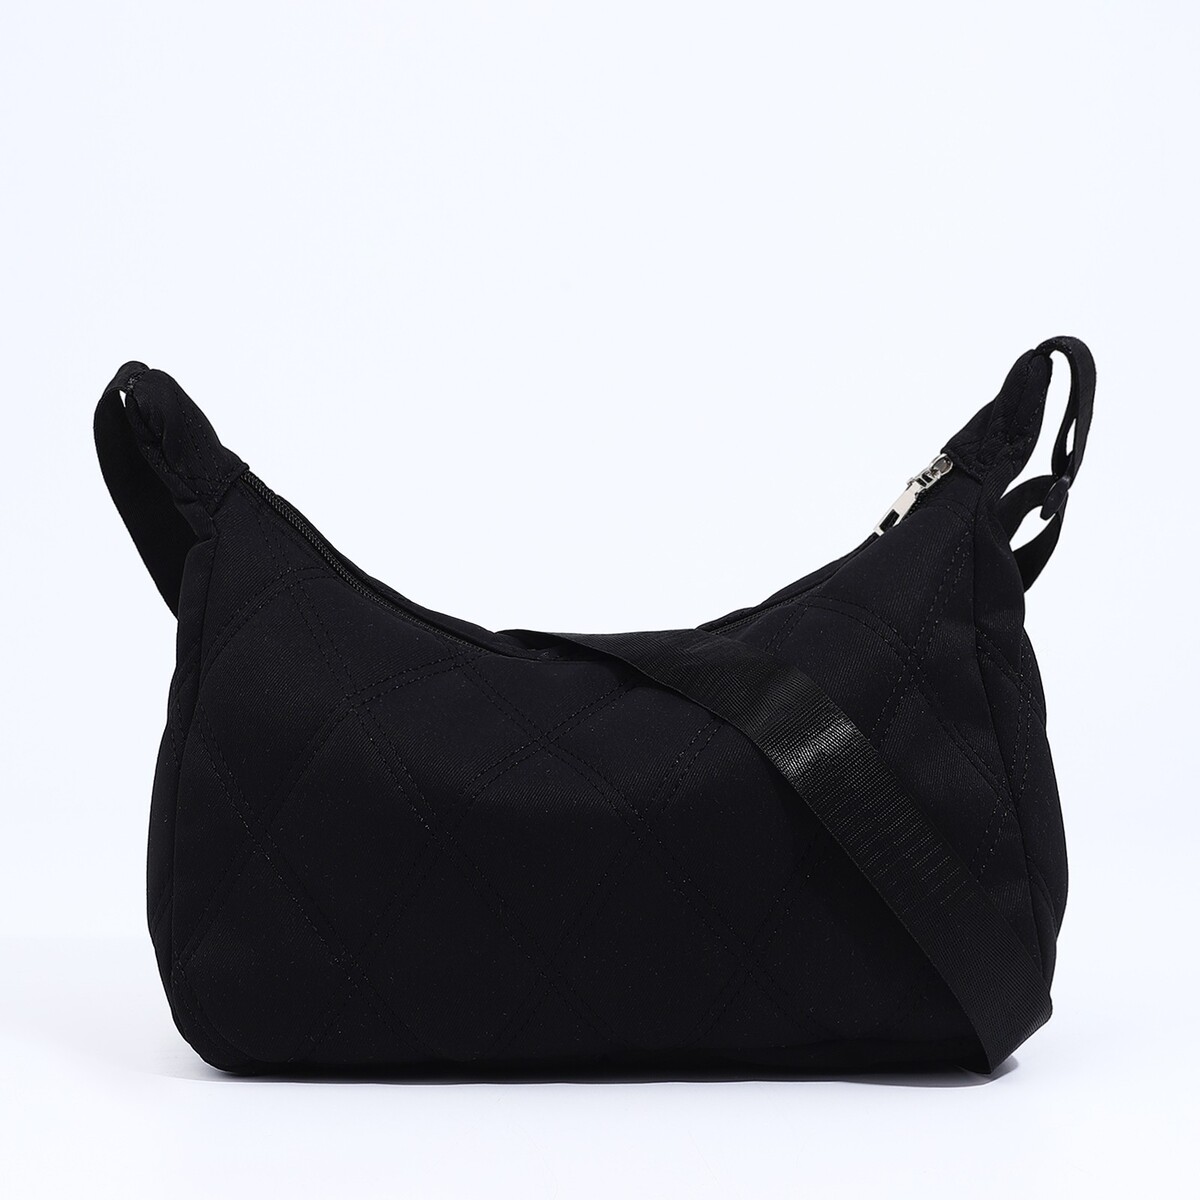 Сумка-мешок на молнии, цвет черный сумка мешок отдел на молнии 5 наружных карманов регулируемый ремень пудра